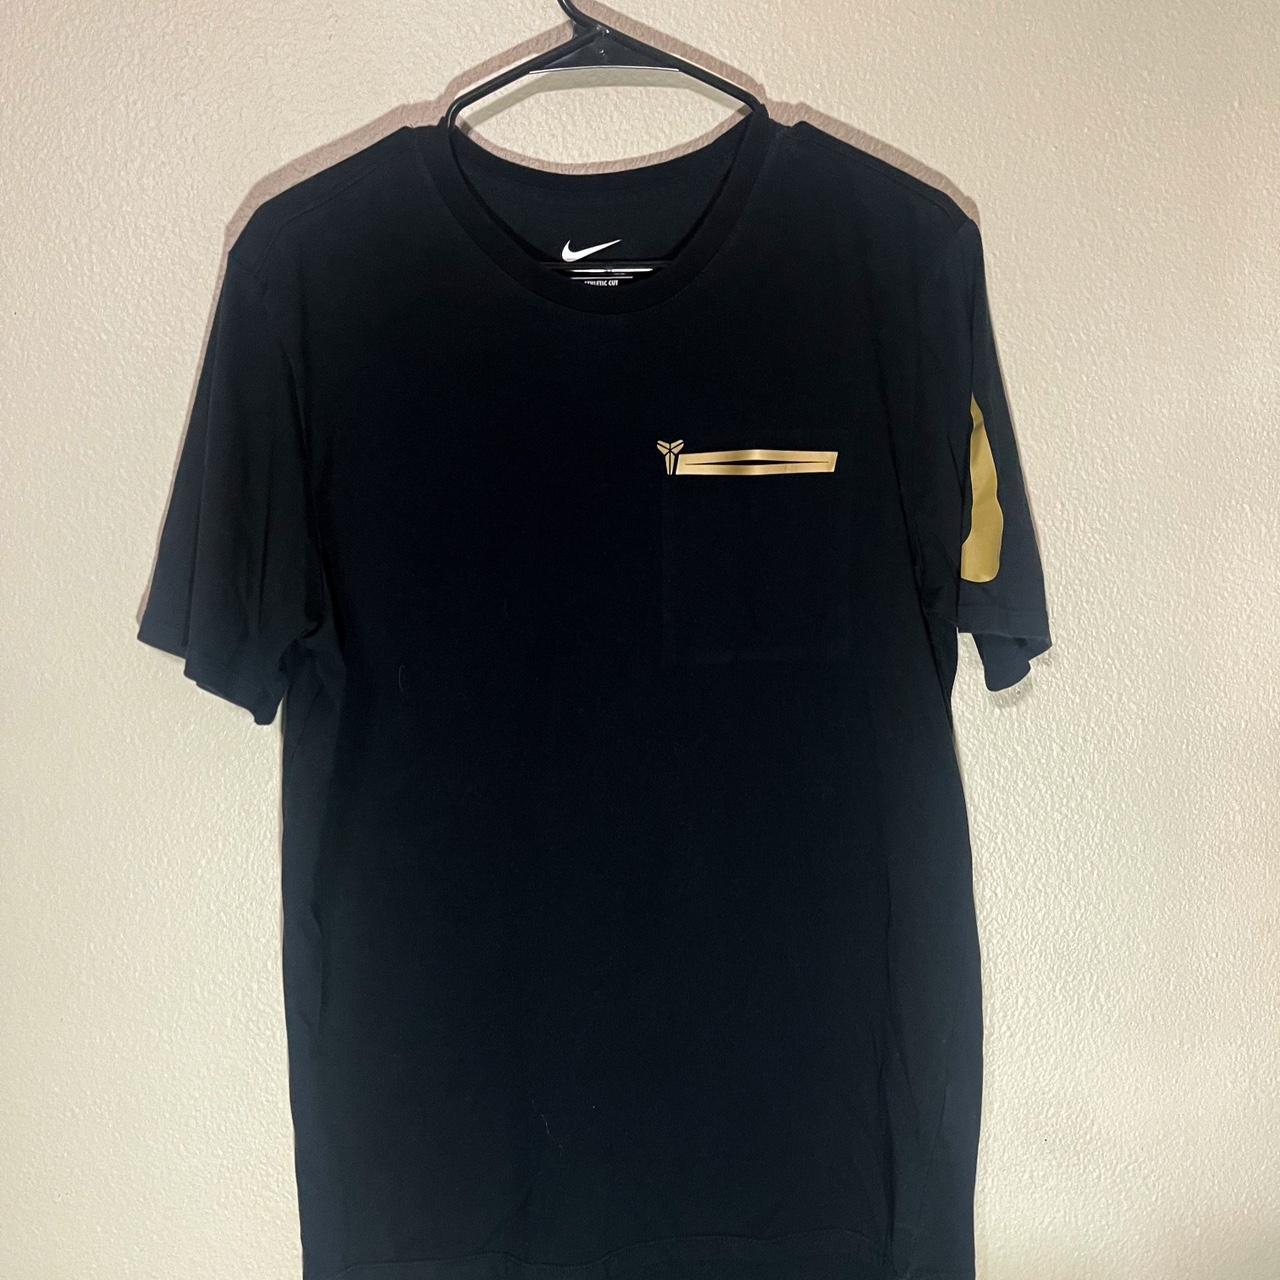 Kobe Bryant Nike Dri-Fit T-Shirt Medium Black Mamba